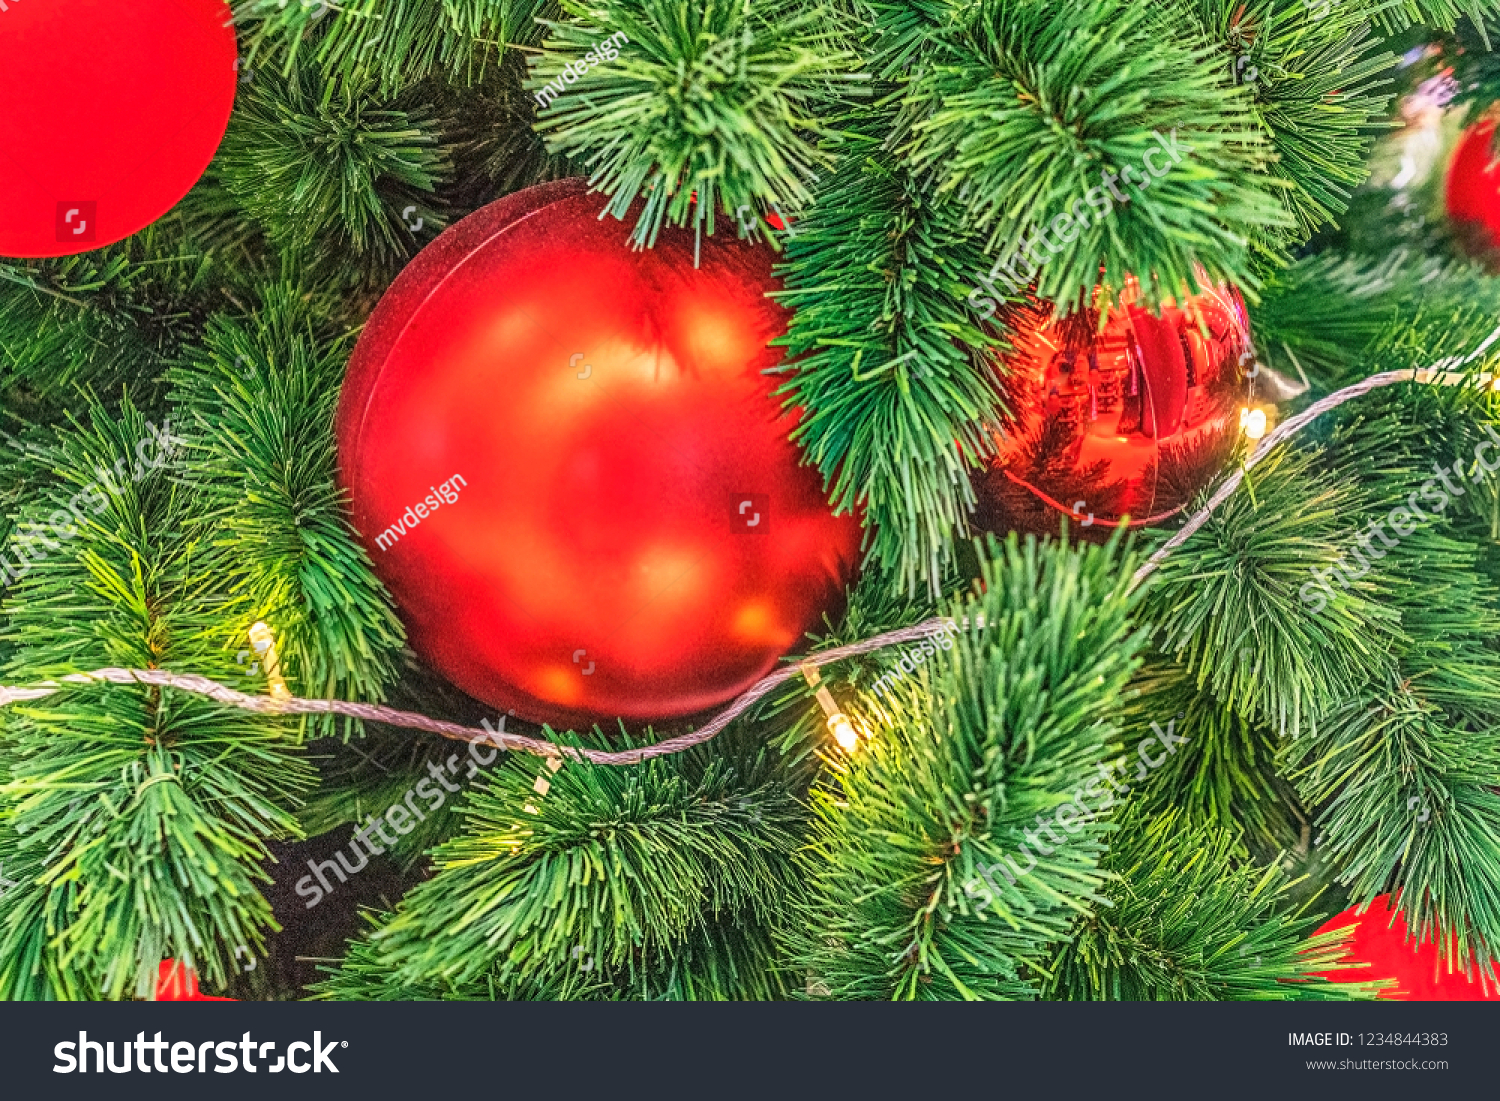 Alberi E Decorazioni Natalizie.Christmas Tree Decoration Decorazioni Natalizie Albero Stock Photo Edit Now 1234844383